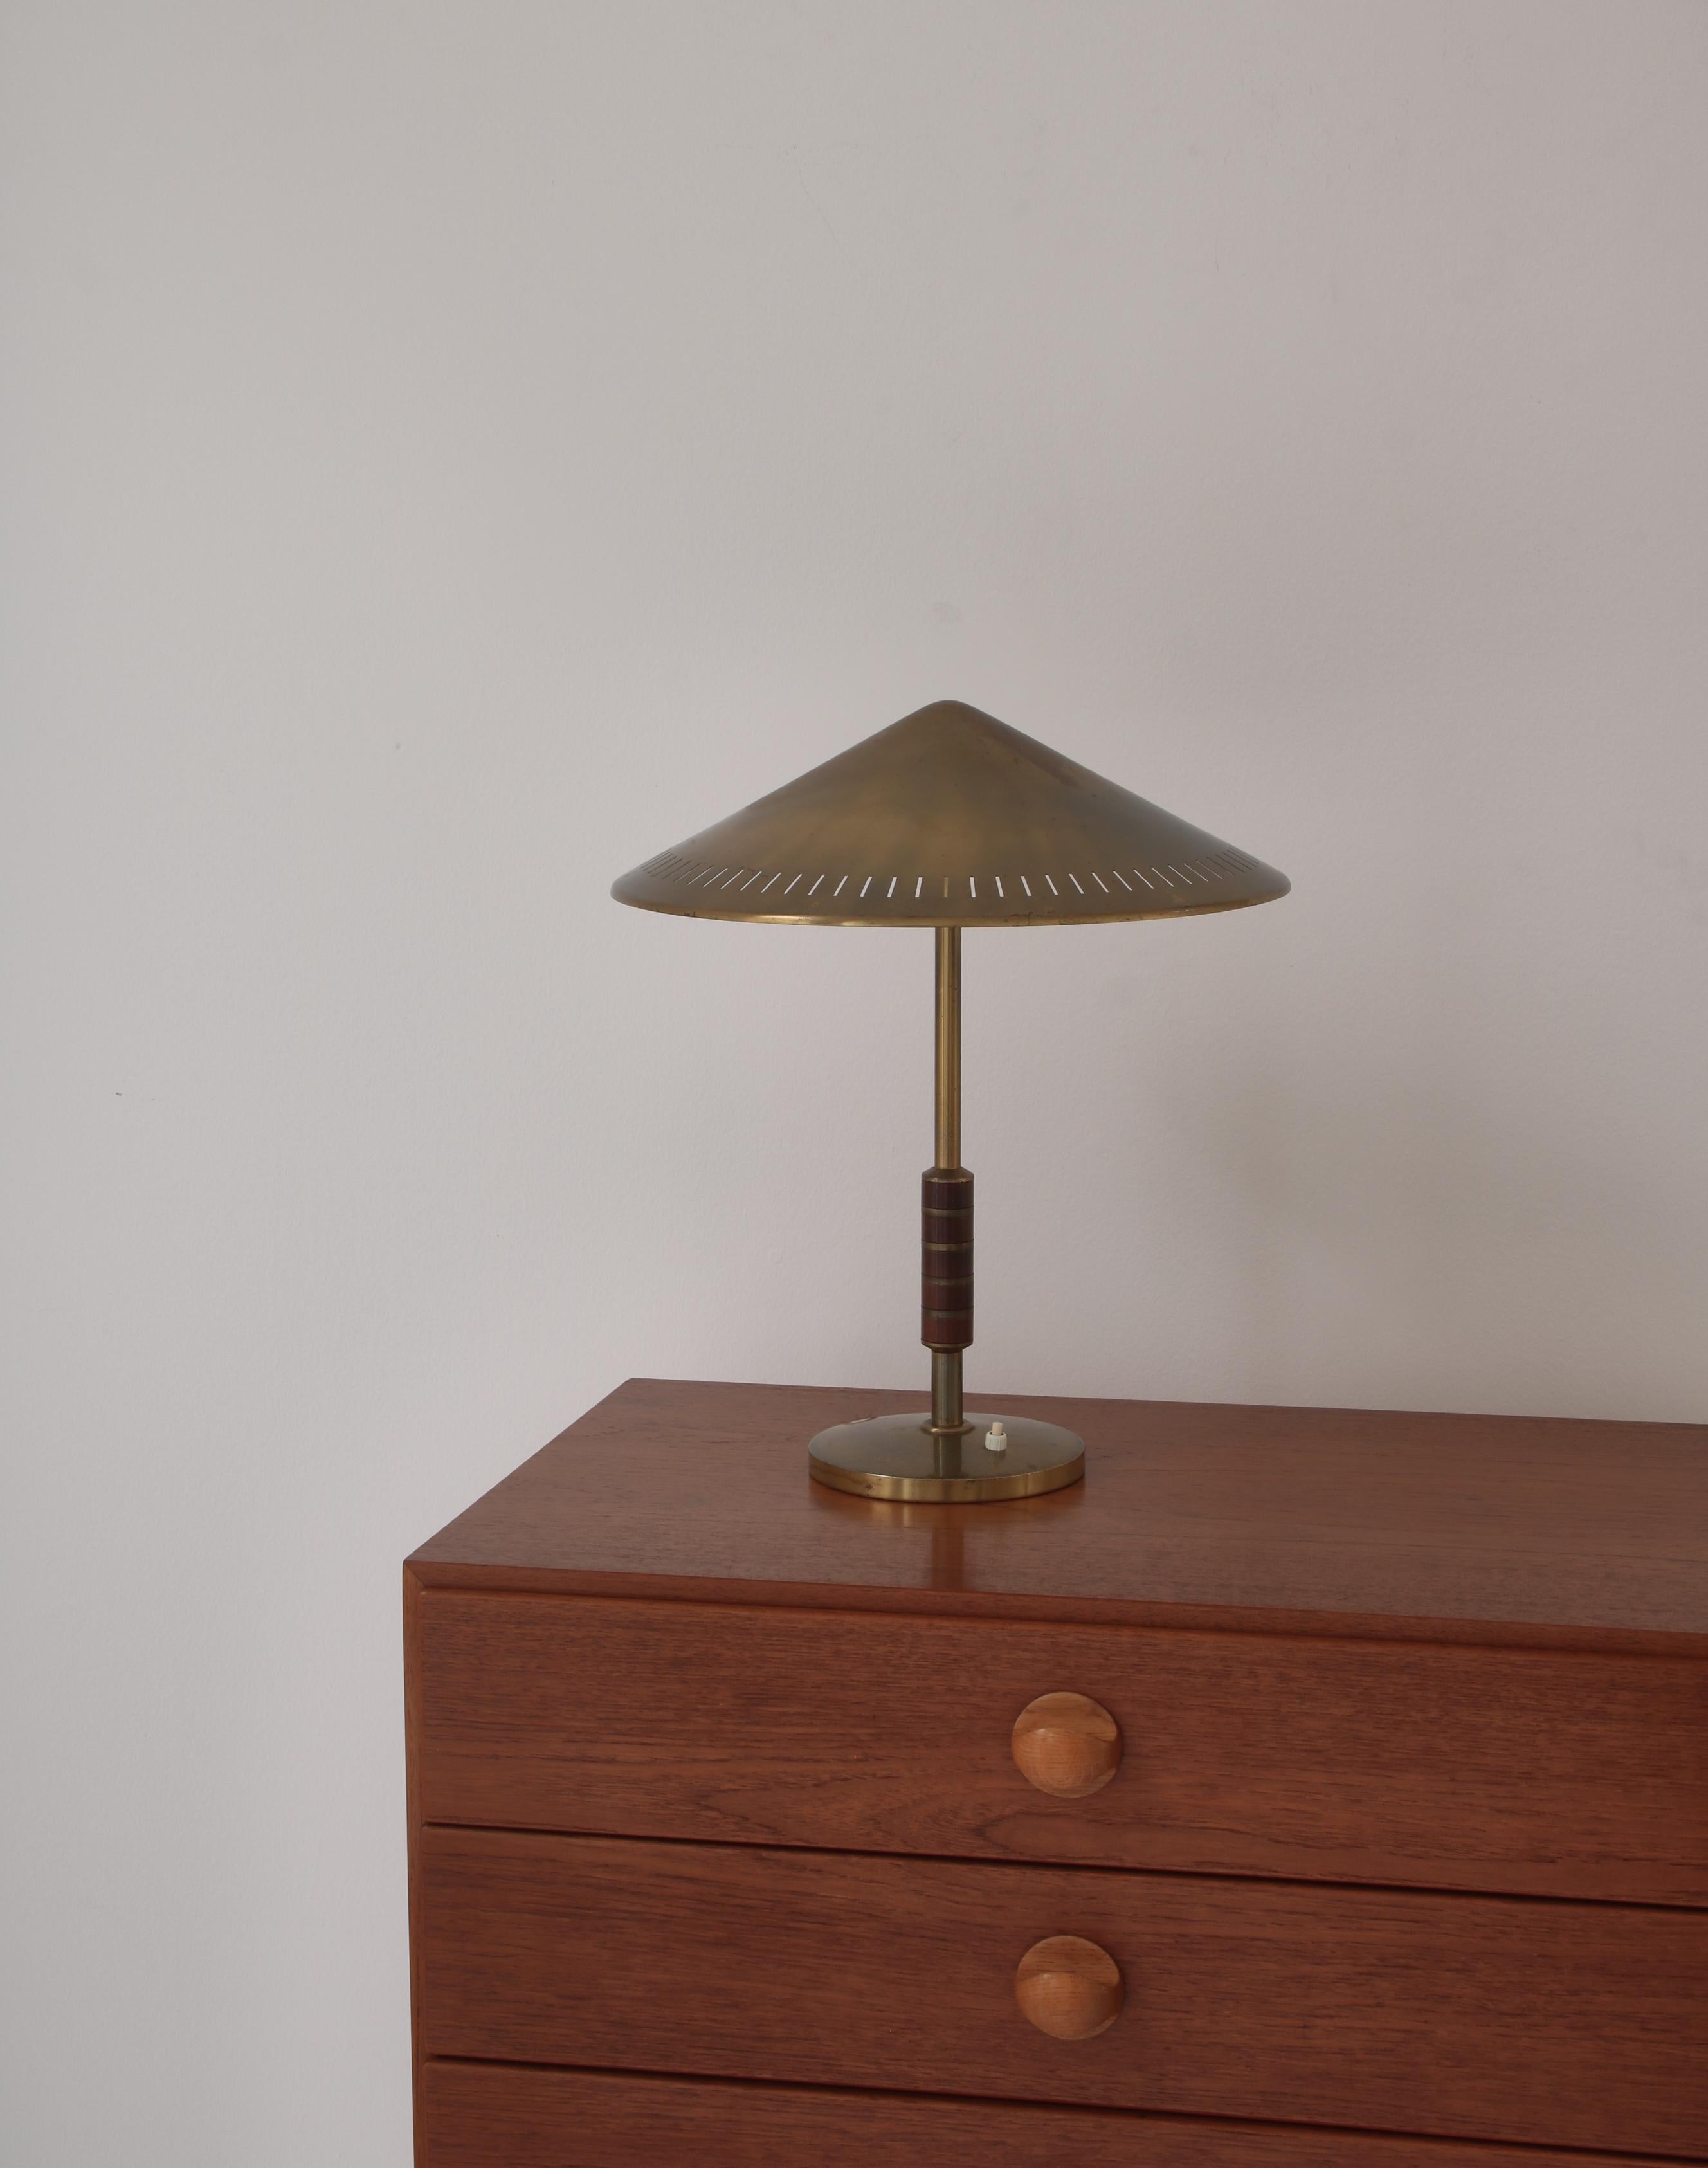 Rare et belle lampe de table moderne danoise en laiton massif avec poignée en acajou. Fabriqué par LYFA, Copenhague dans les années 1950 et conçu par le designer danois Bent Karlby. La lampe possède deux sources de lumière.